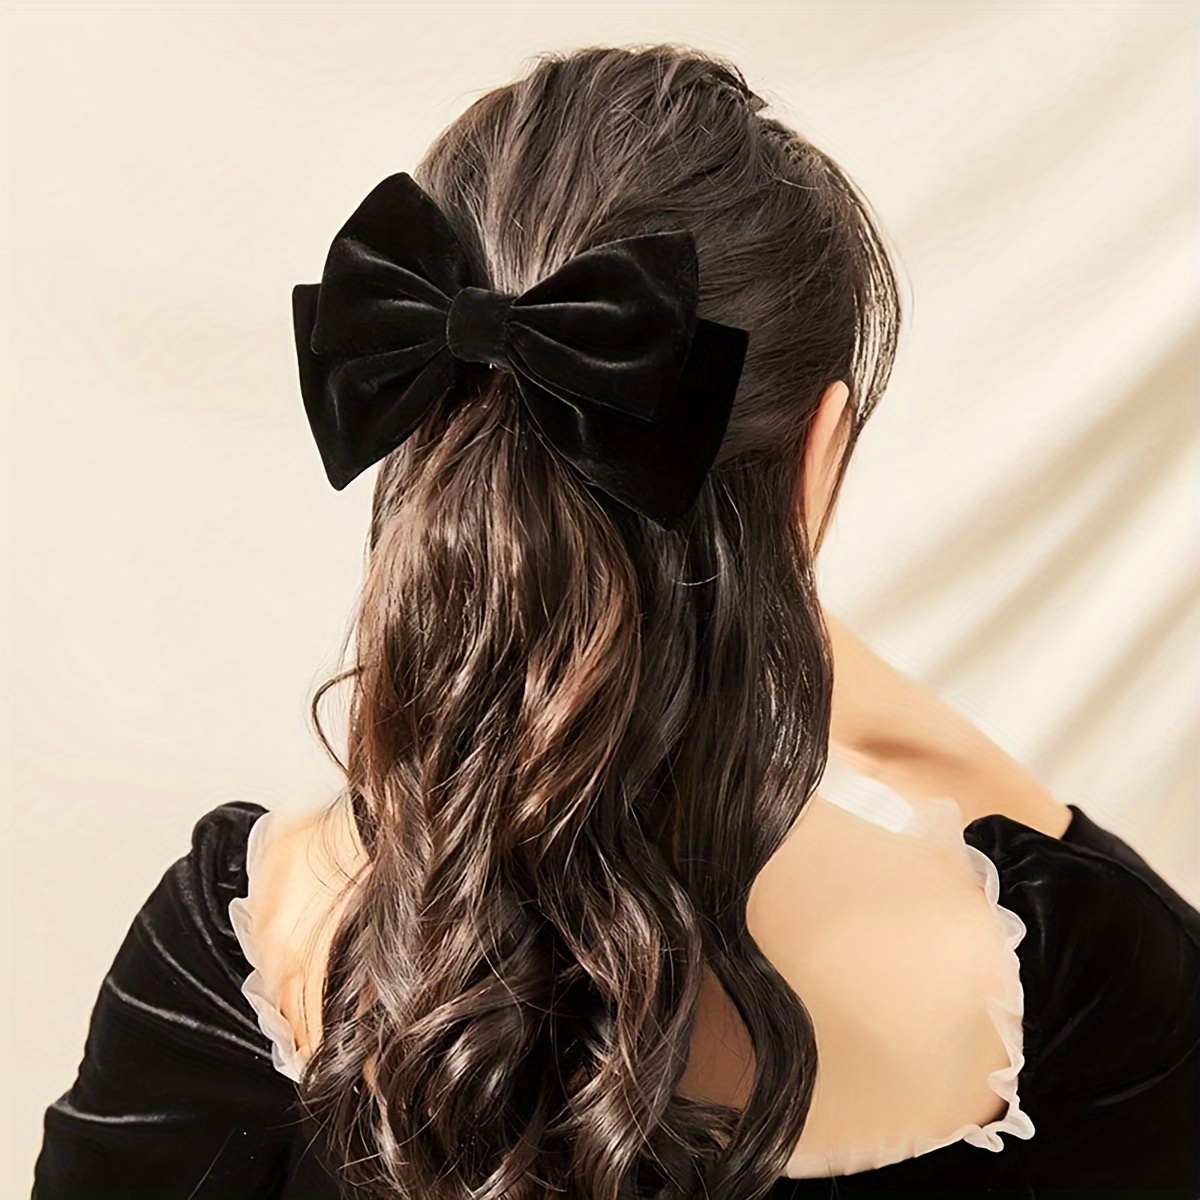 4 PCS Velvet Hair Bows For Girls, Black&Red Velvet Christmas Large Hair  Bows With Alligator Clips Hair Accessories, Hair Ribbons For Girls Teens  Toddler